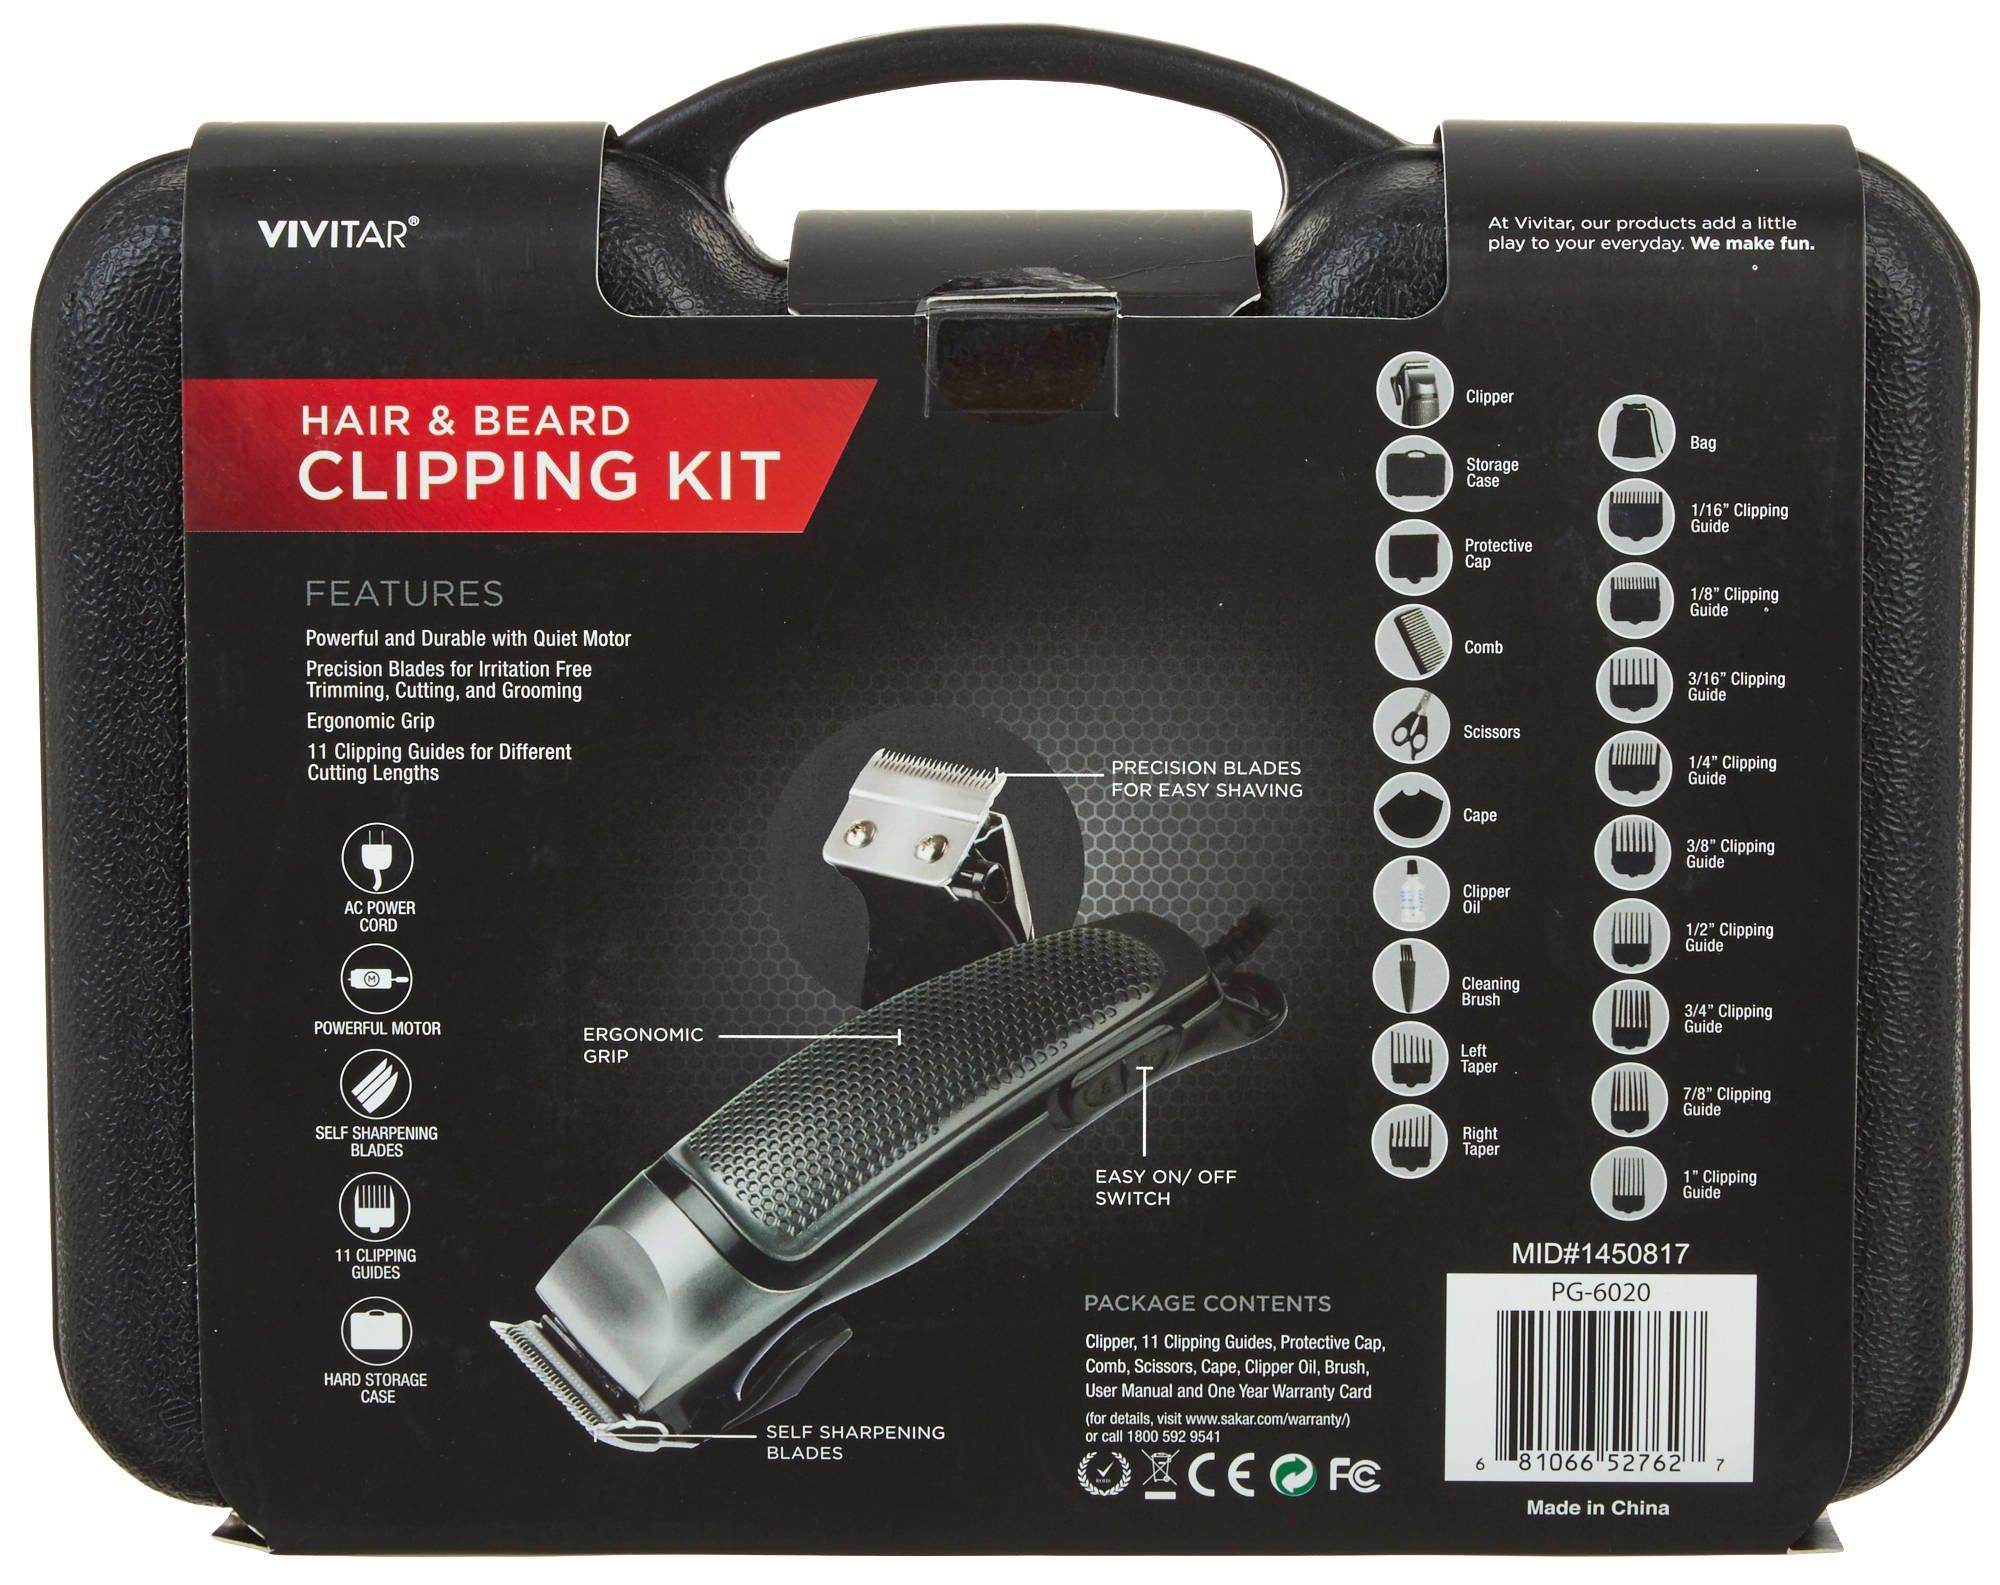 vivitar hair & beard clipping kit